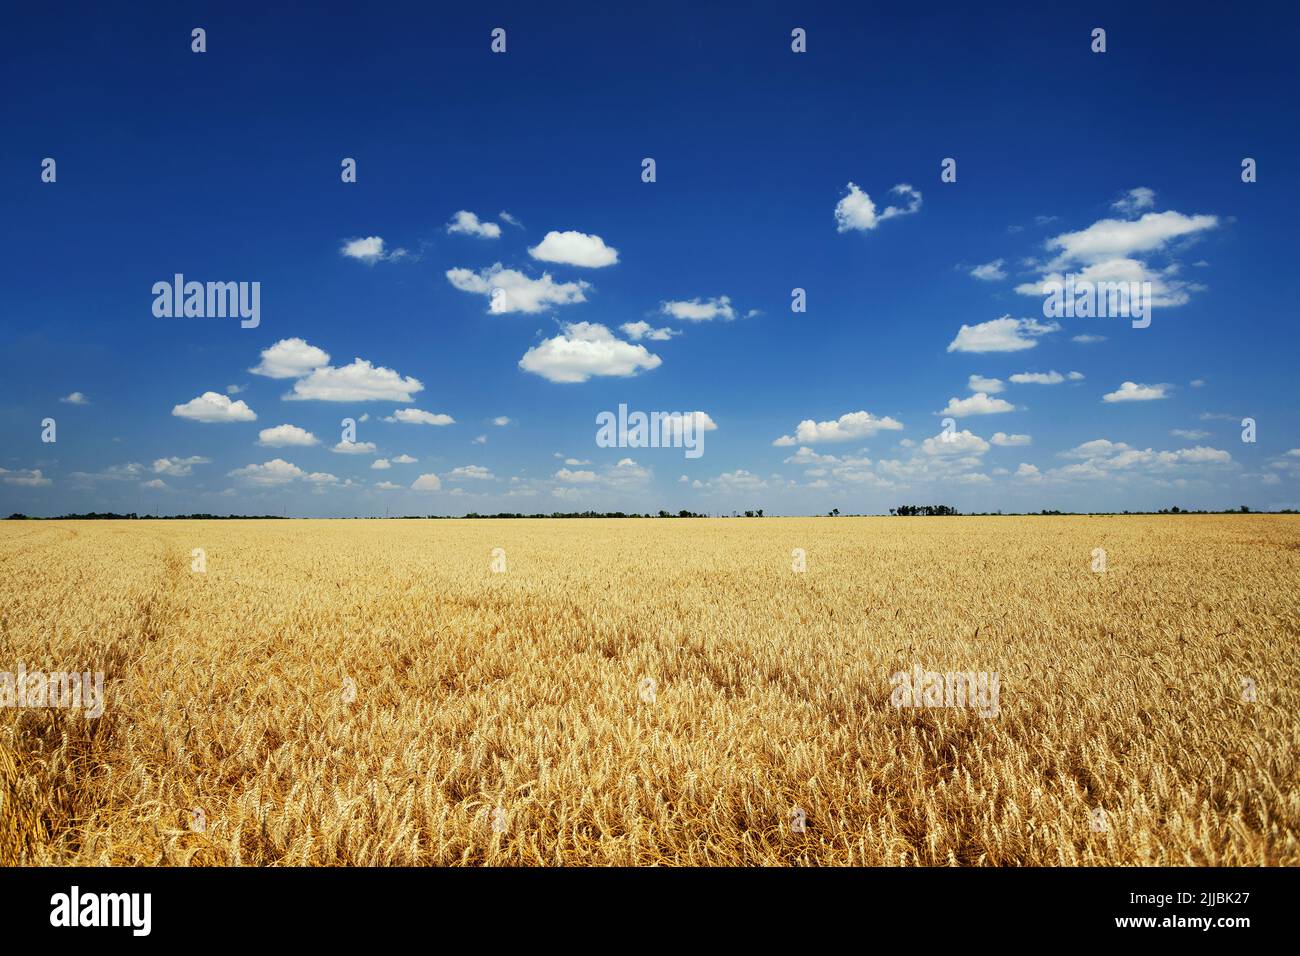 Paesaggio estivo. Campo di grano giallo e cielo blu scuro con nuvole Foto Stock